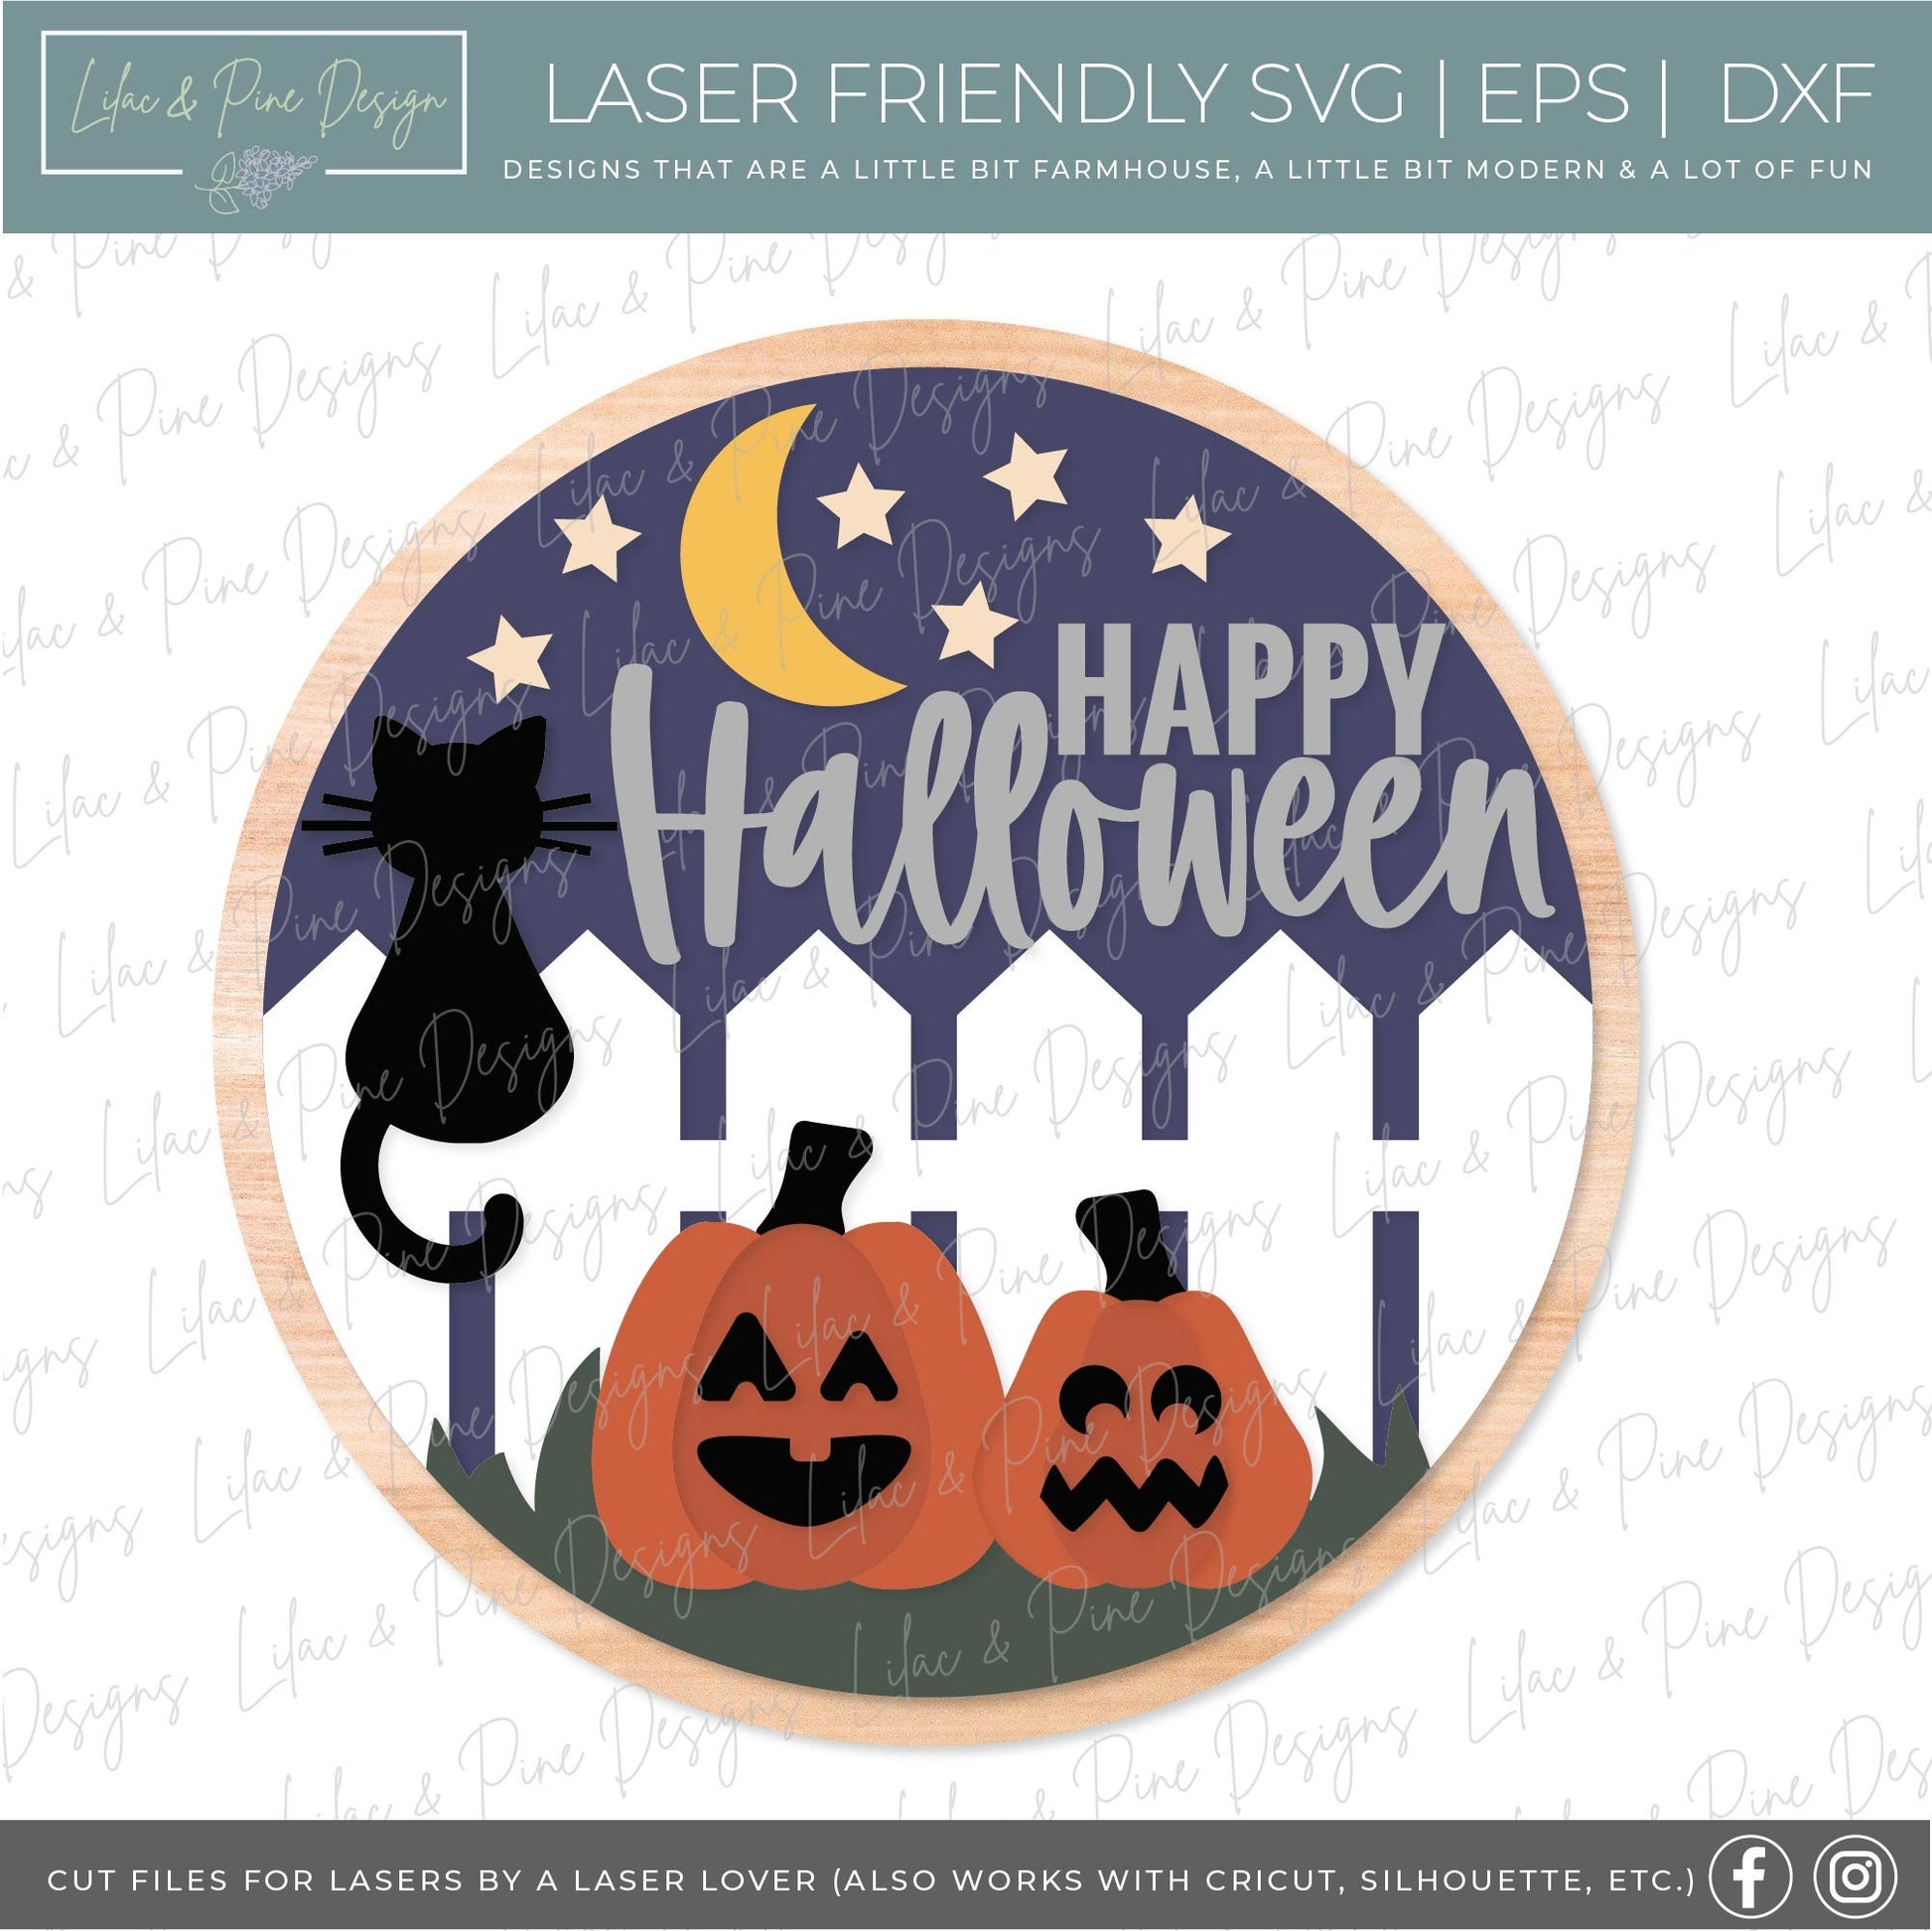 Halloween door hanger SVG, Black Cat door hanger, Pumpkin welcome sign SVG, Halloween welcome sign, Halloween decor, Glowforge laser SVG